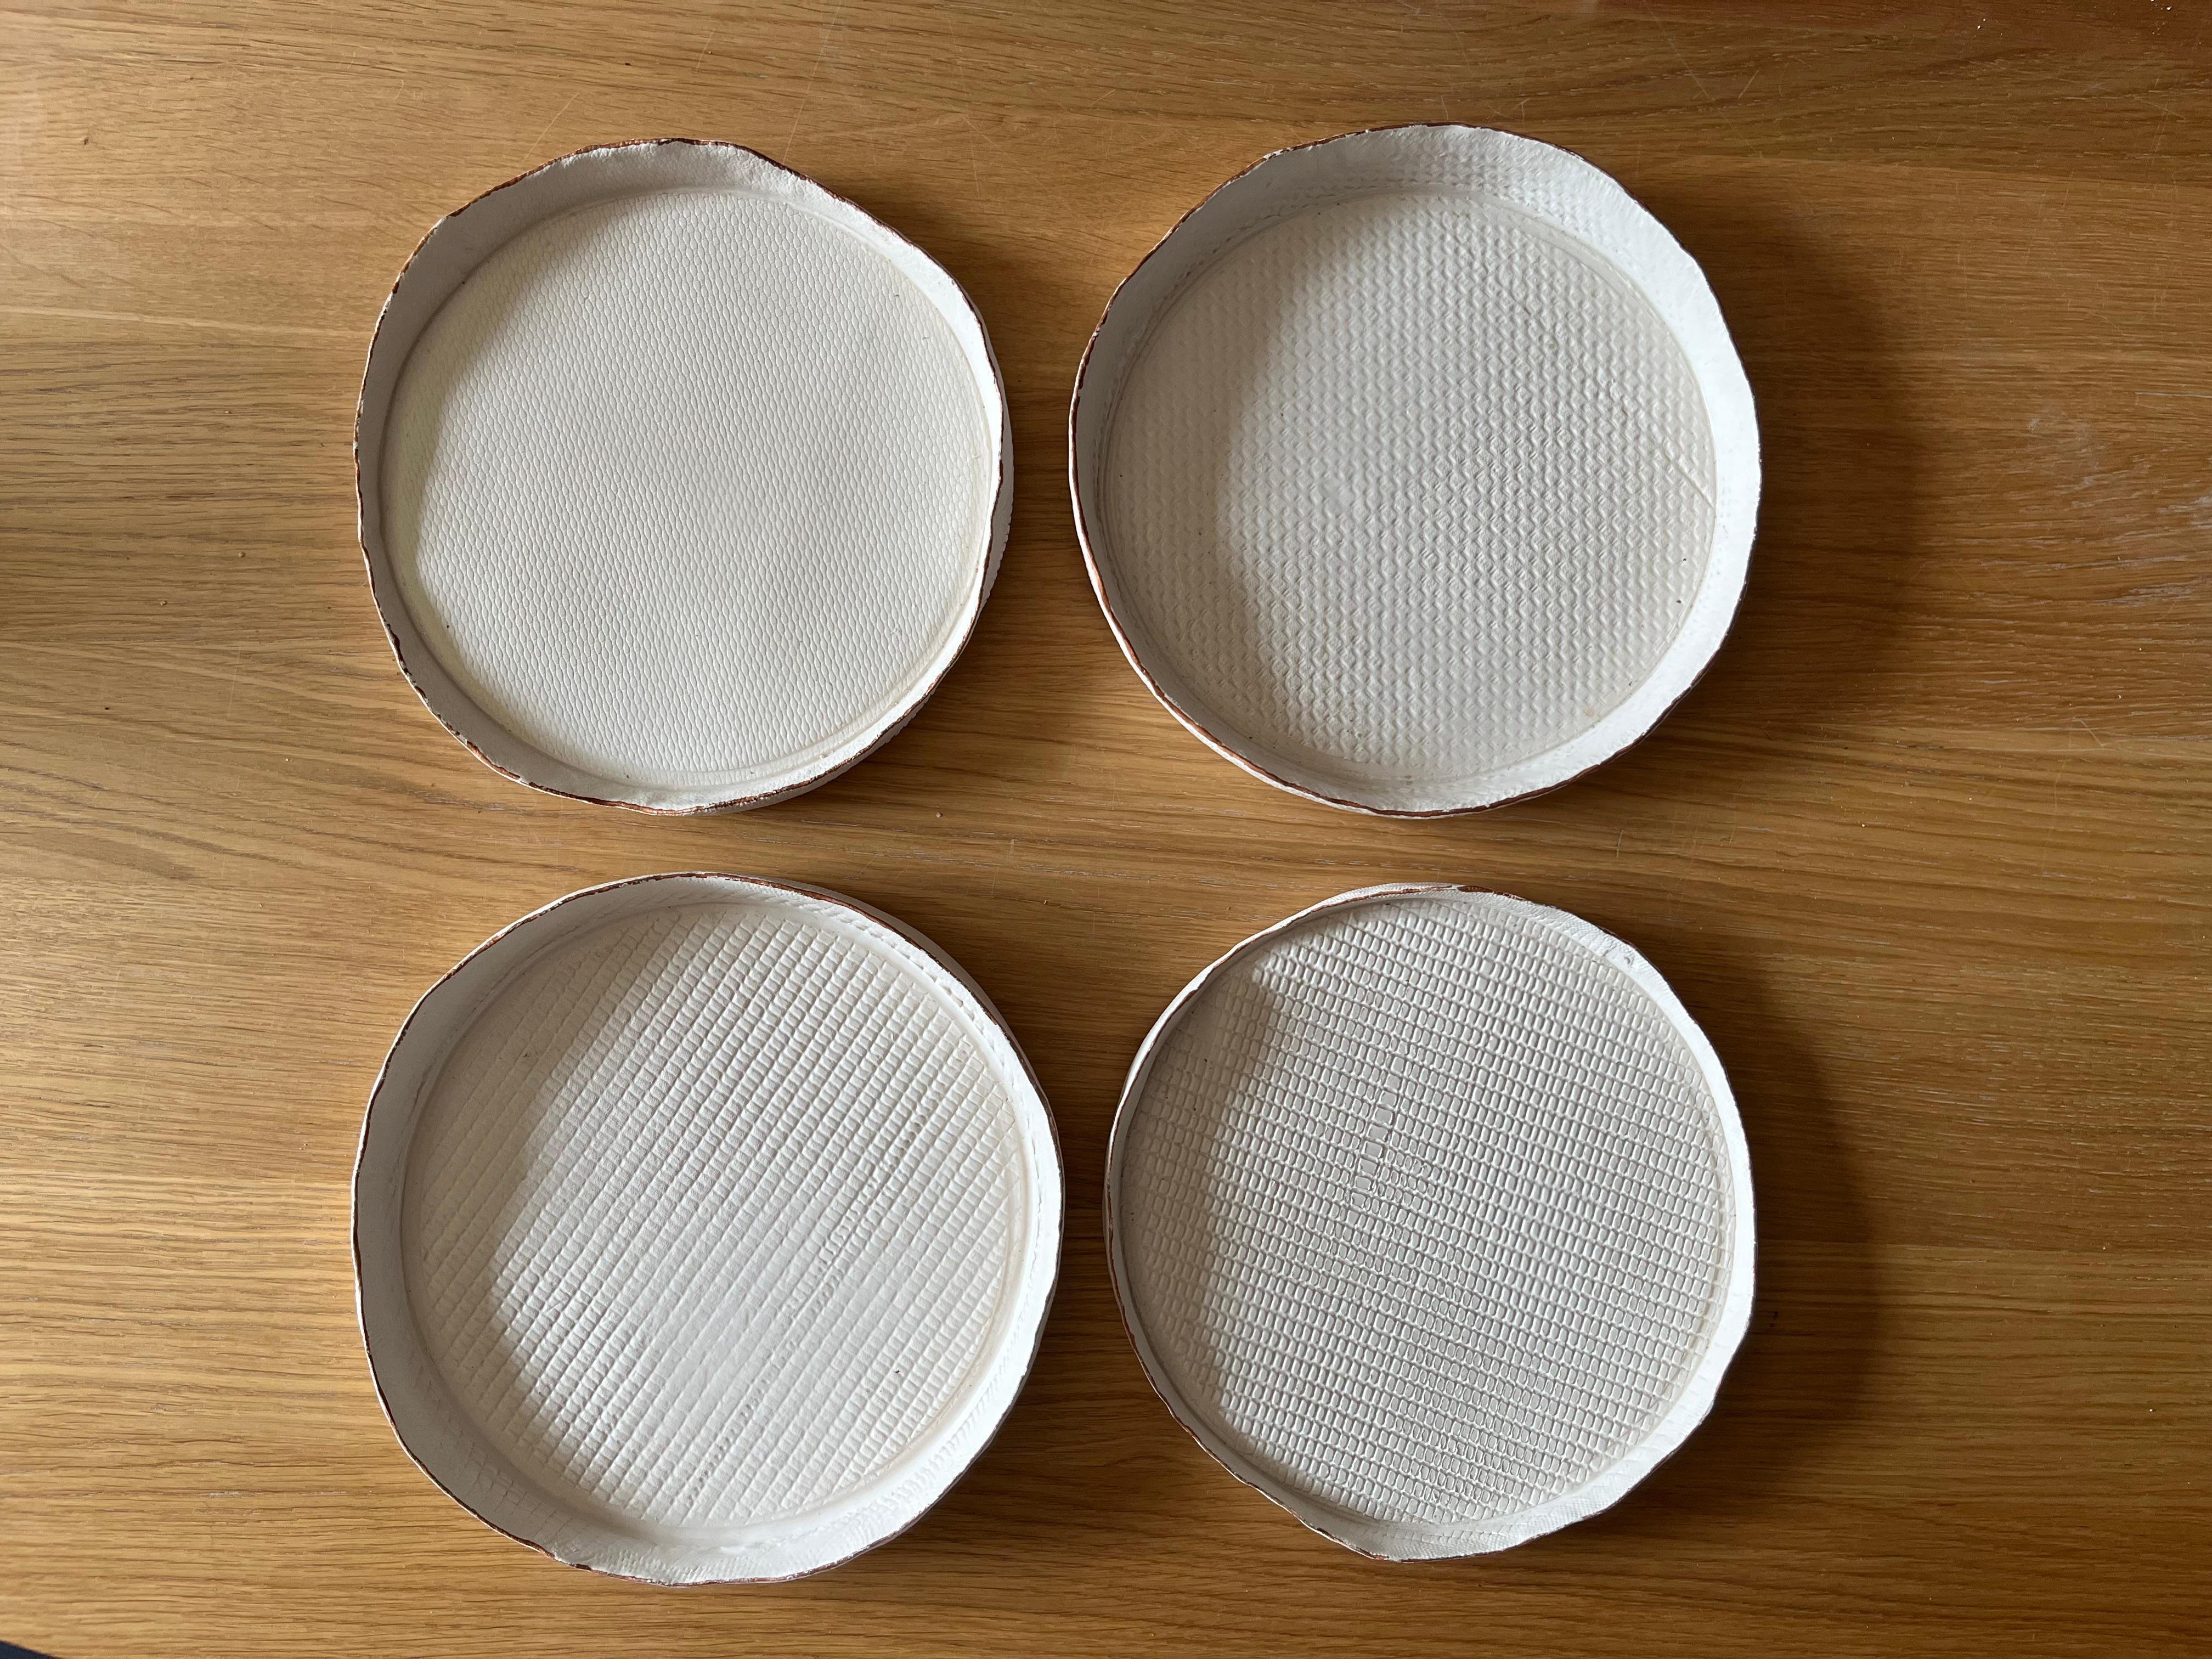 Organic Modern TESSUTI/Piatti decorativi in ceramica bianca opaca ispirati ai tessuti d'arredo. For Sale